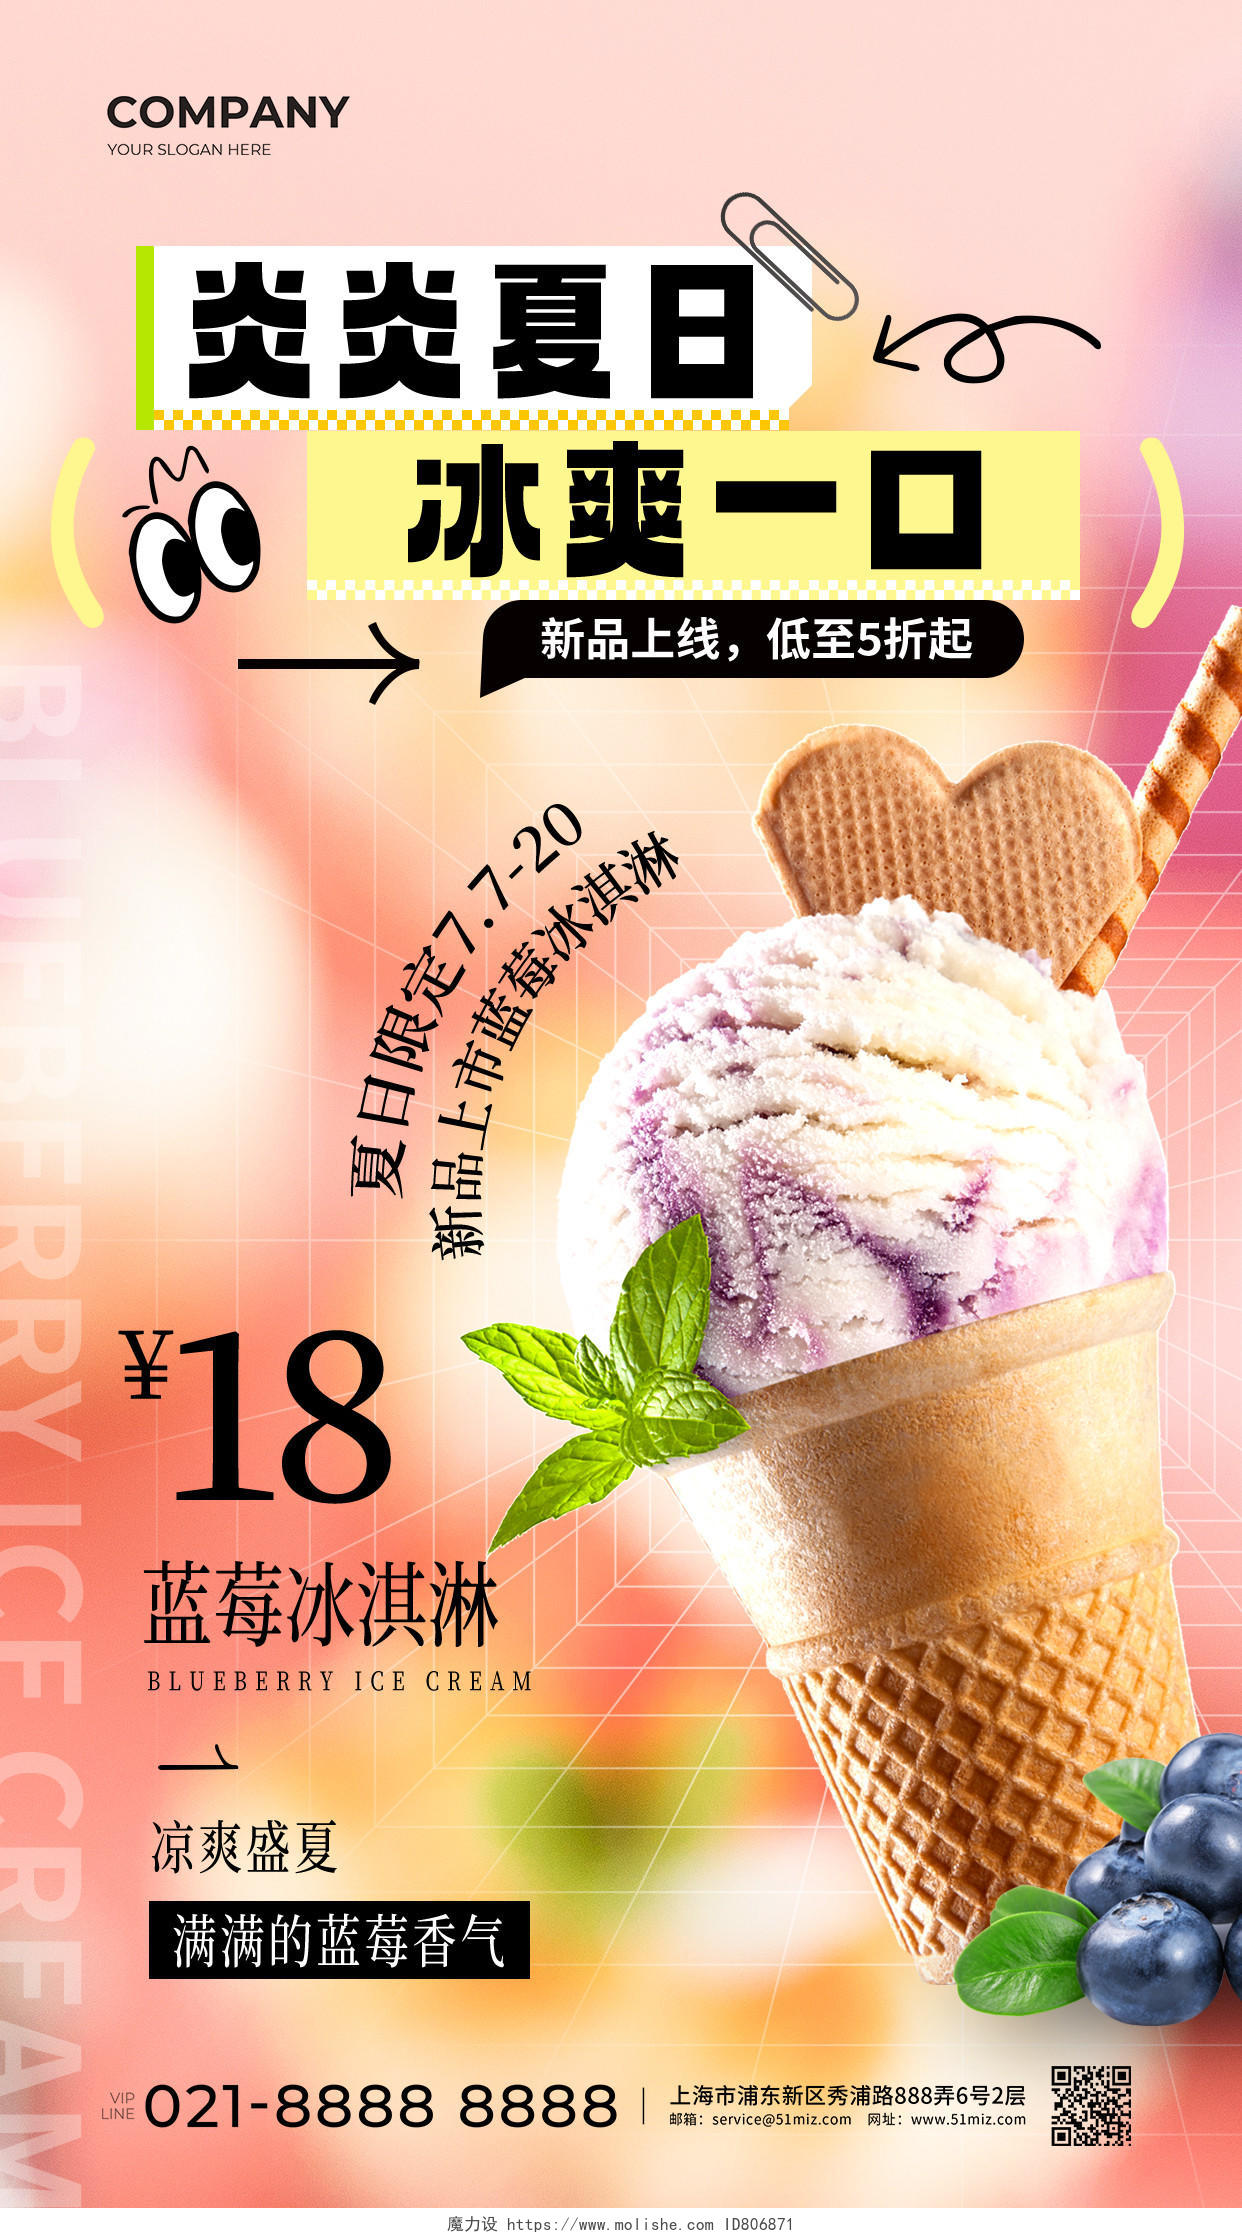 粉色弥散炎炎夏日冰爽一口冰淇淋促销文案海报